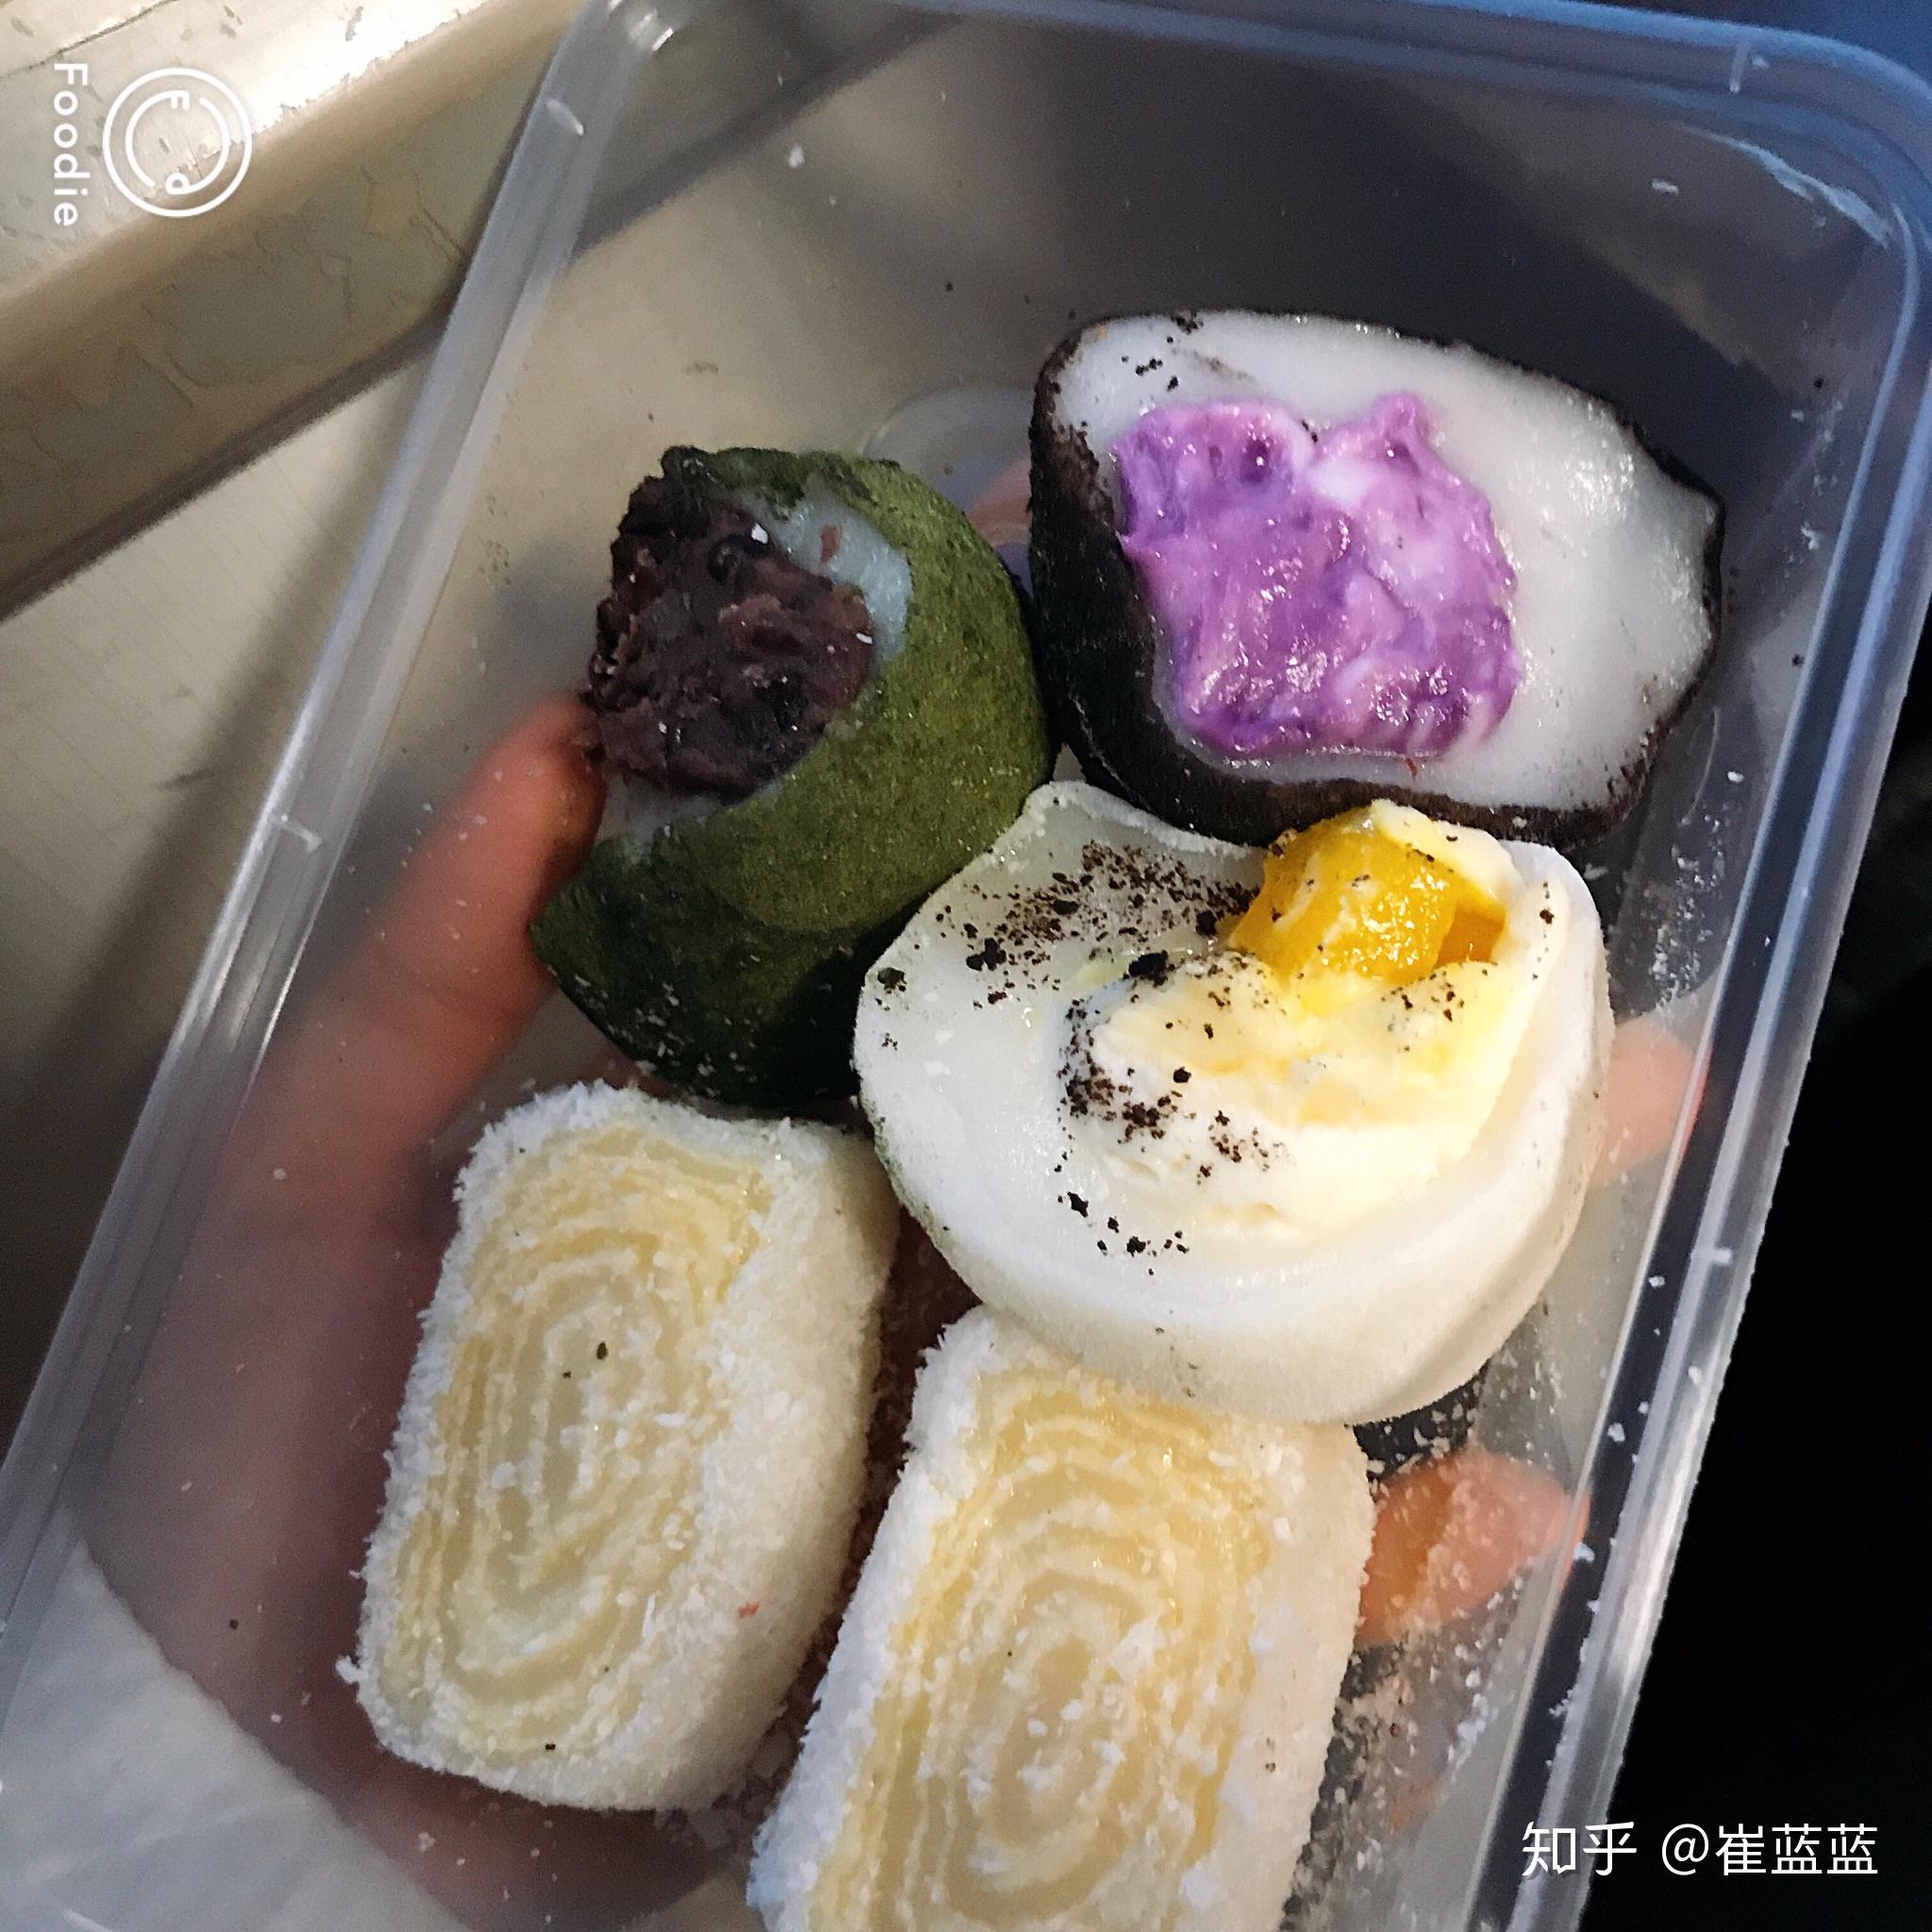 【日本美食豆知識】和菓子與四季 | All About Japan